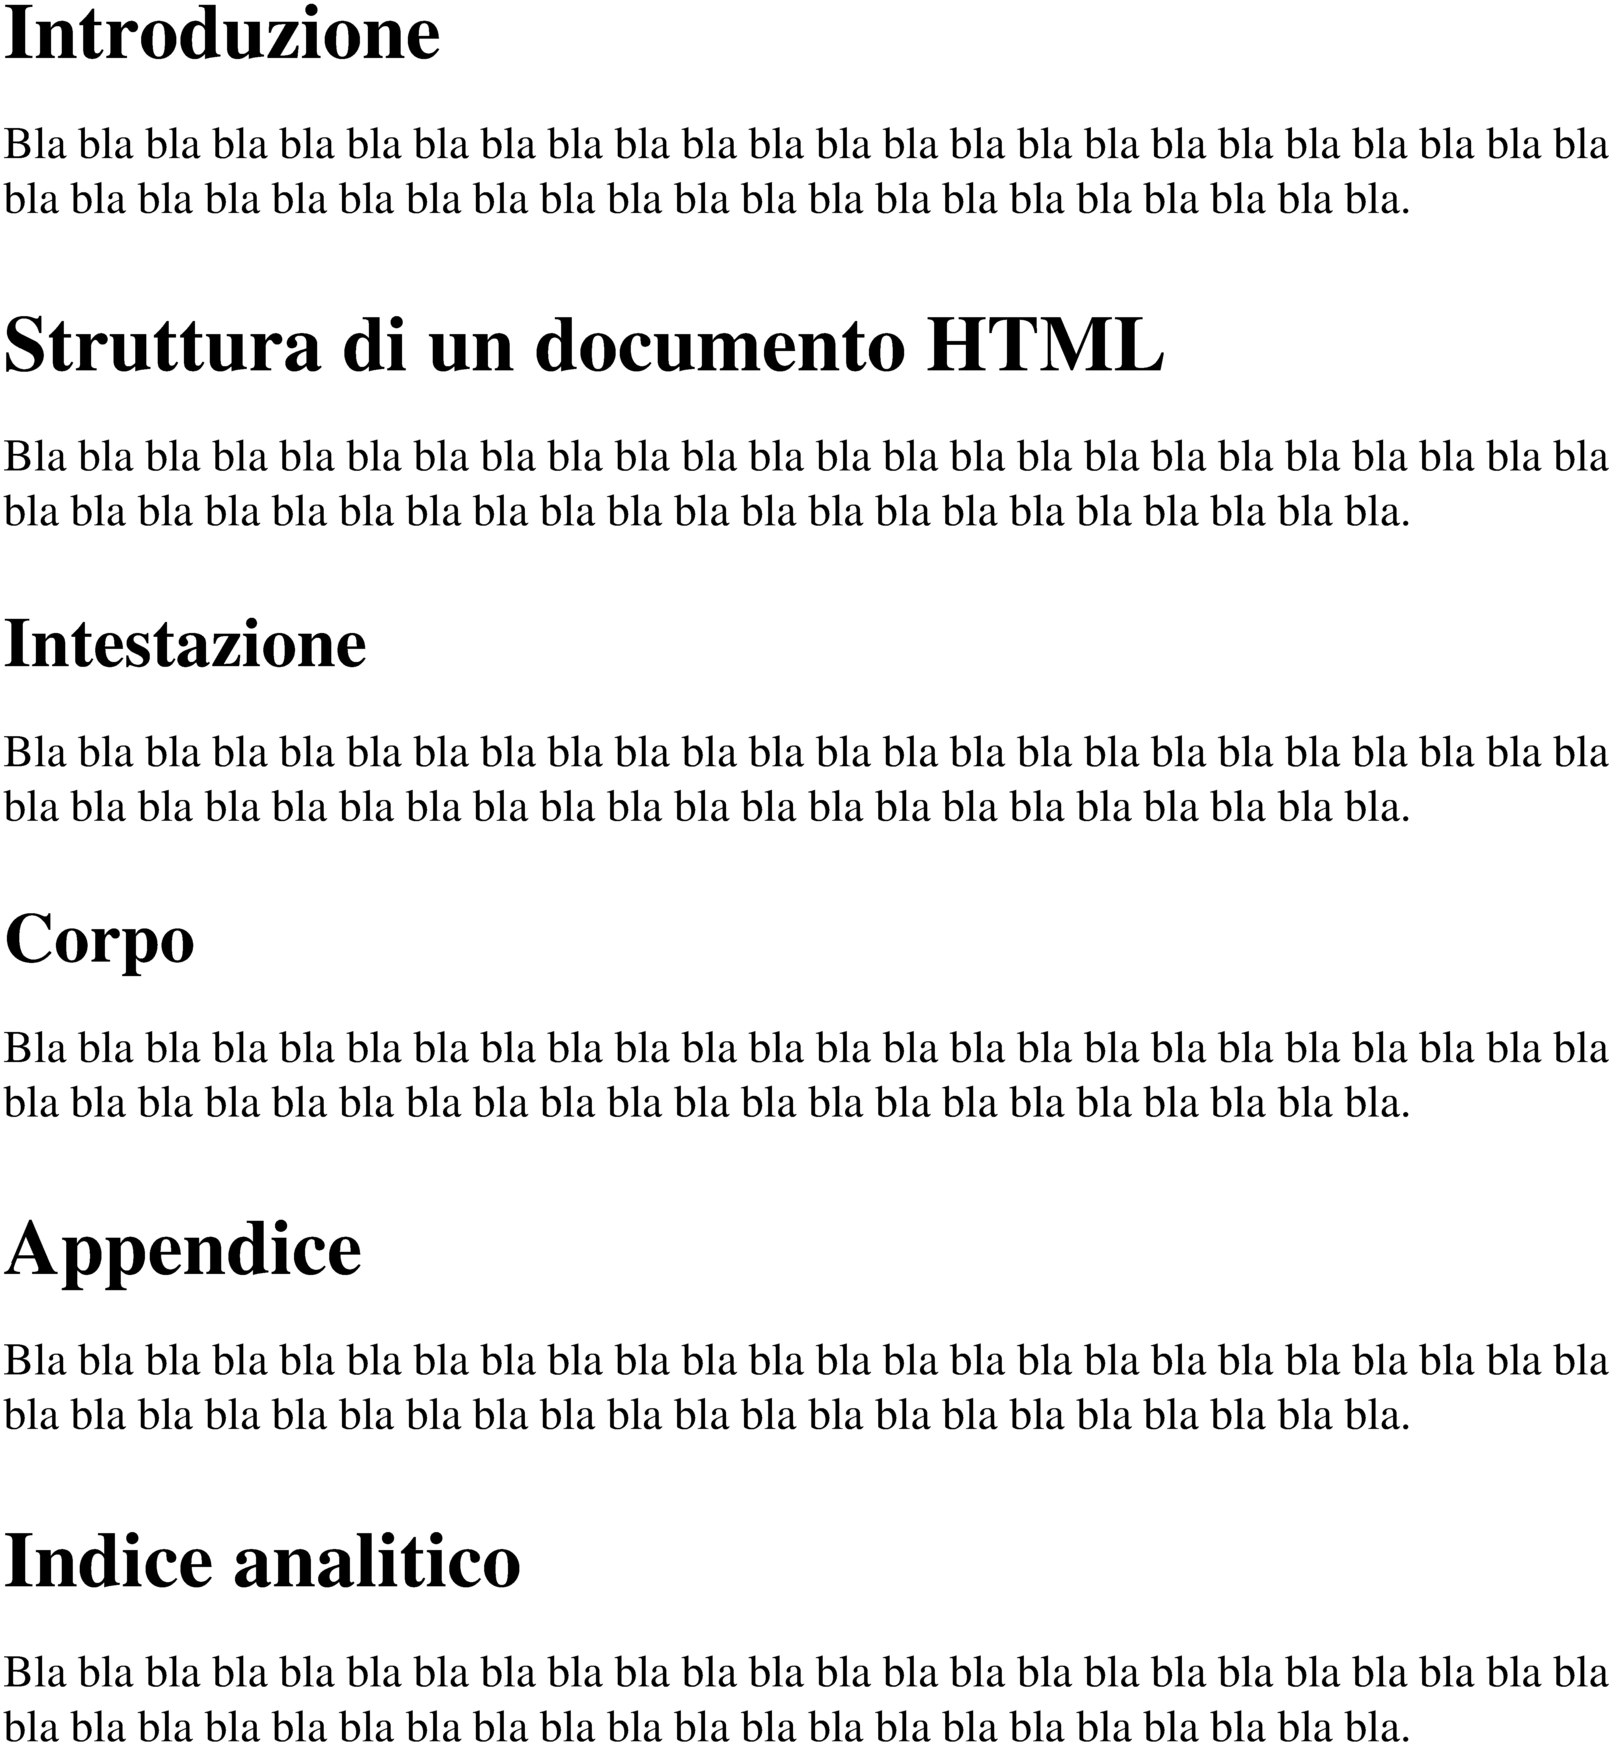 struttura-04.html